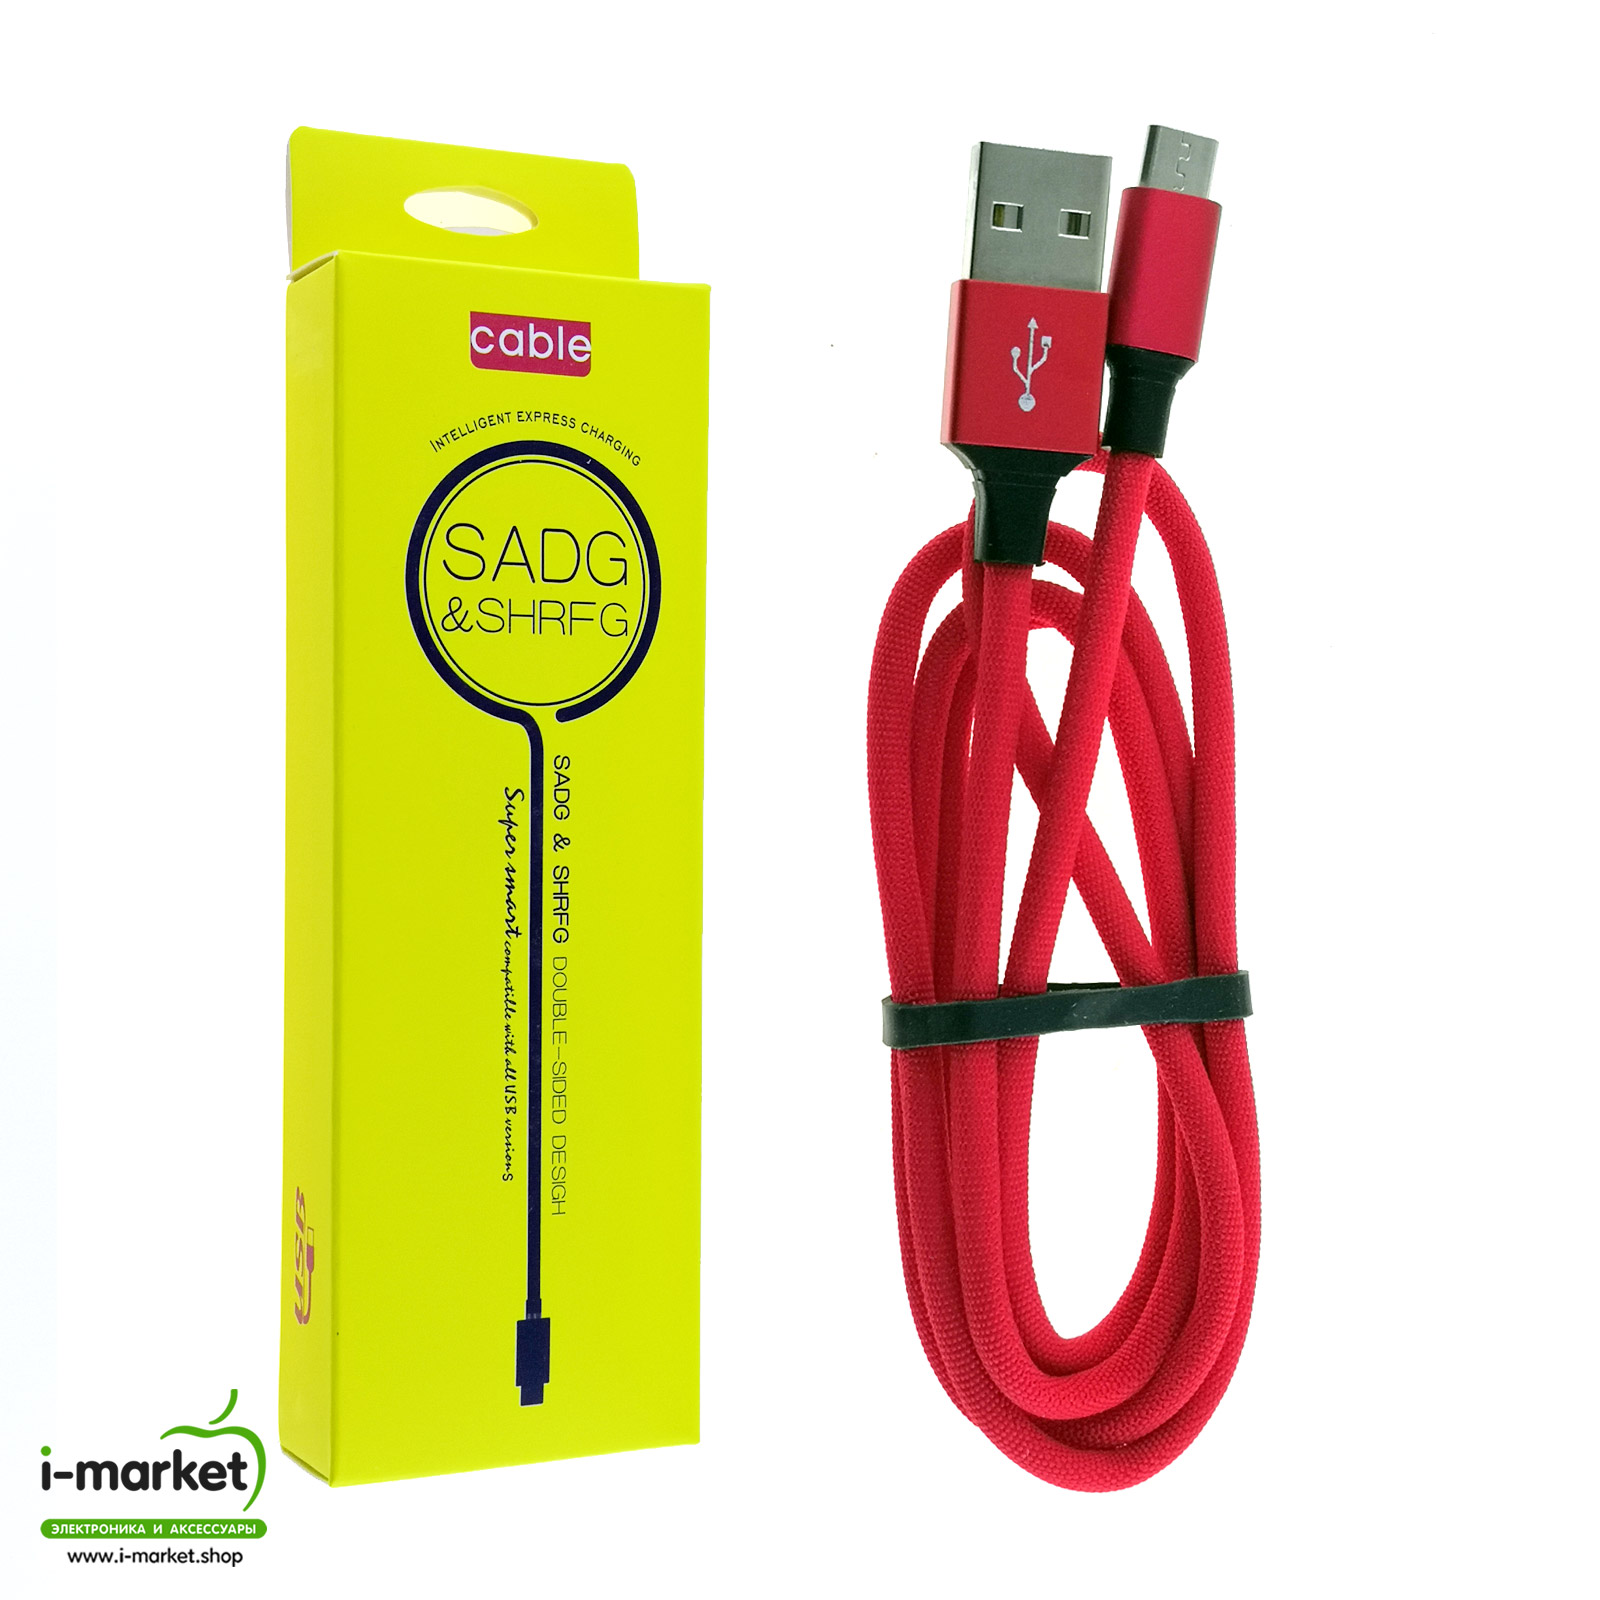 USB Дата-кабель SADG & SHRFG Micro USB, длина 1 метр, нейлоновое армирование, цвет красный.